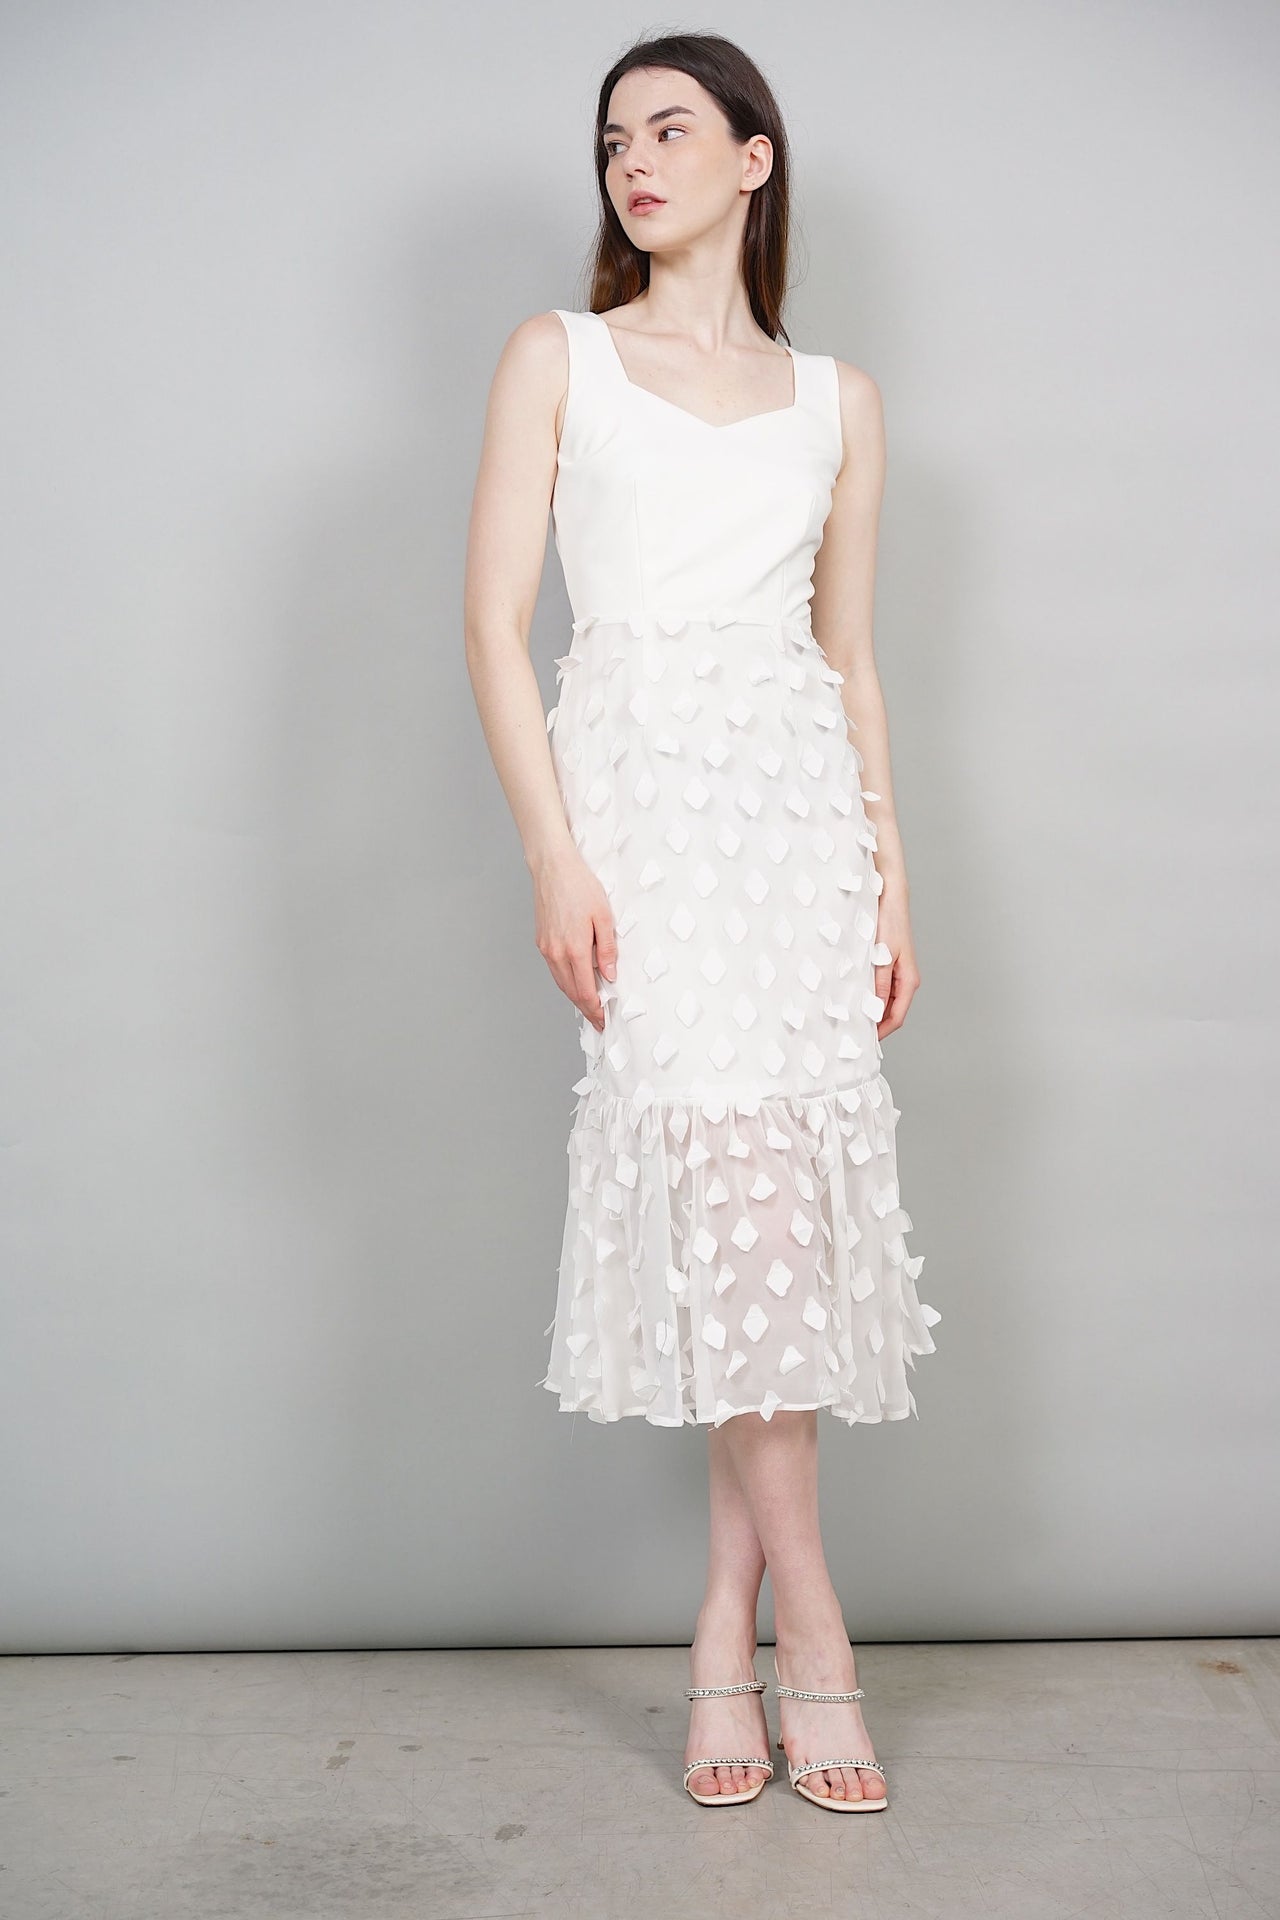 Erie Ruffled Hem Midi Dress in White - Arriving Soon